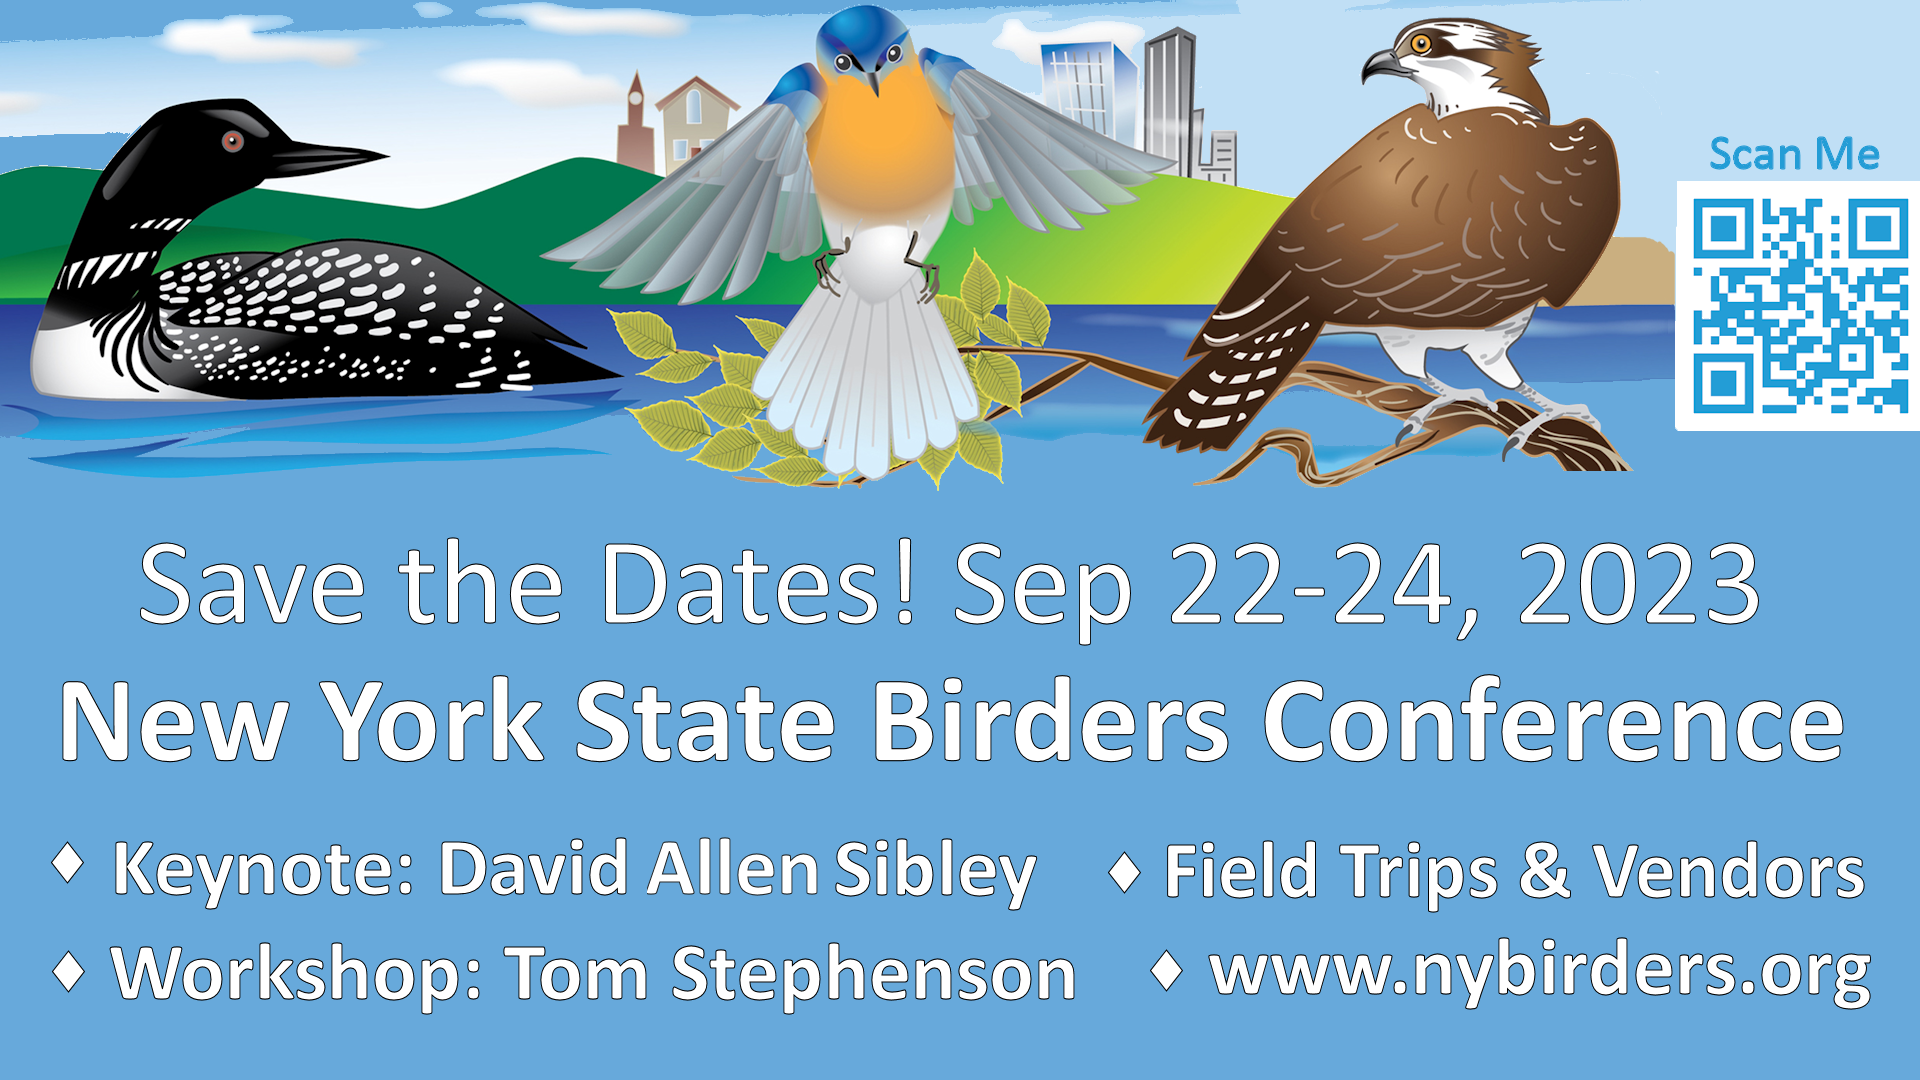 FB-2023-NY-Birders-Conference